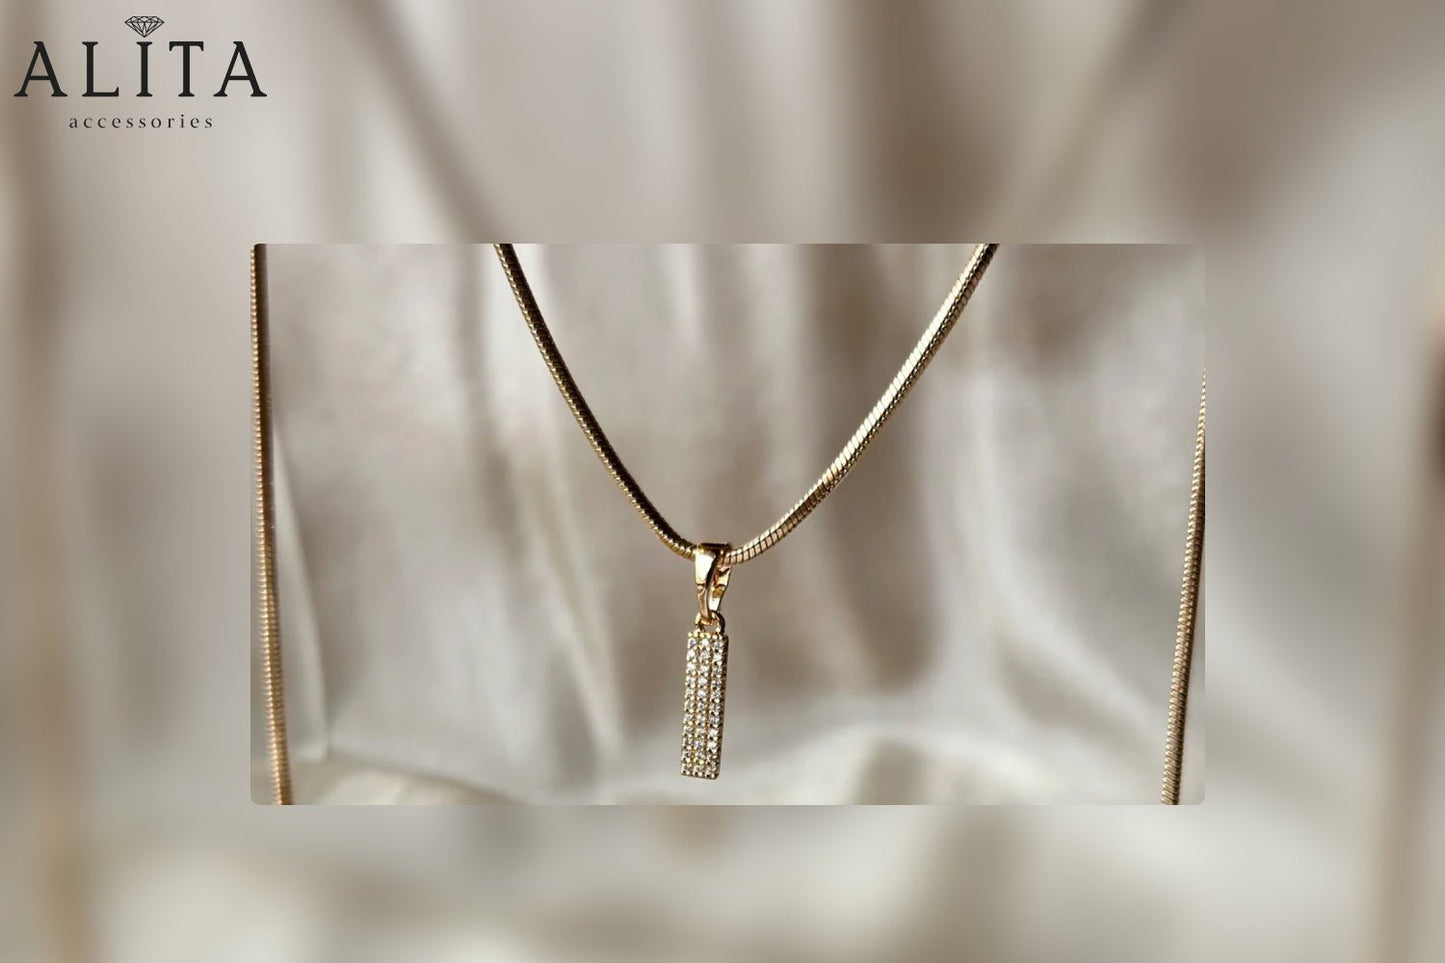 Best Artificial Jewelry Brands in Pakistan - Alita Accessories